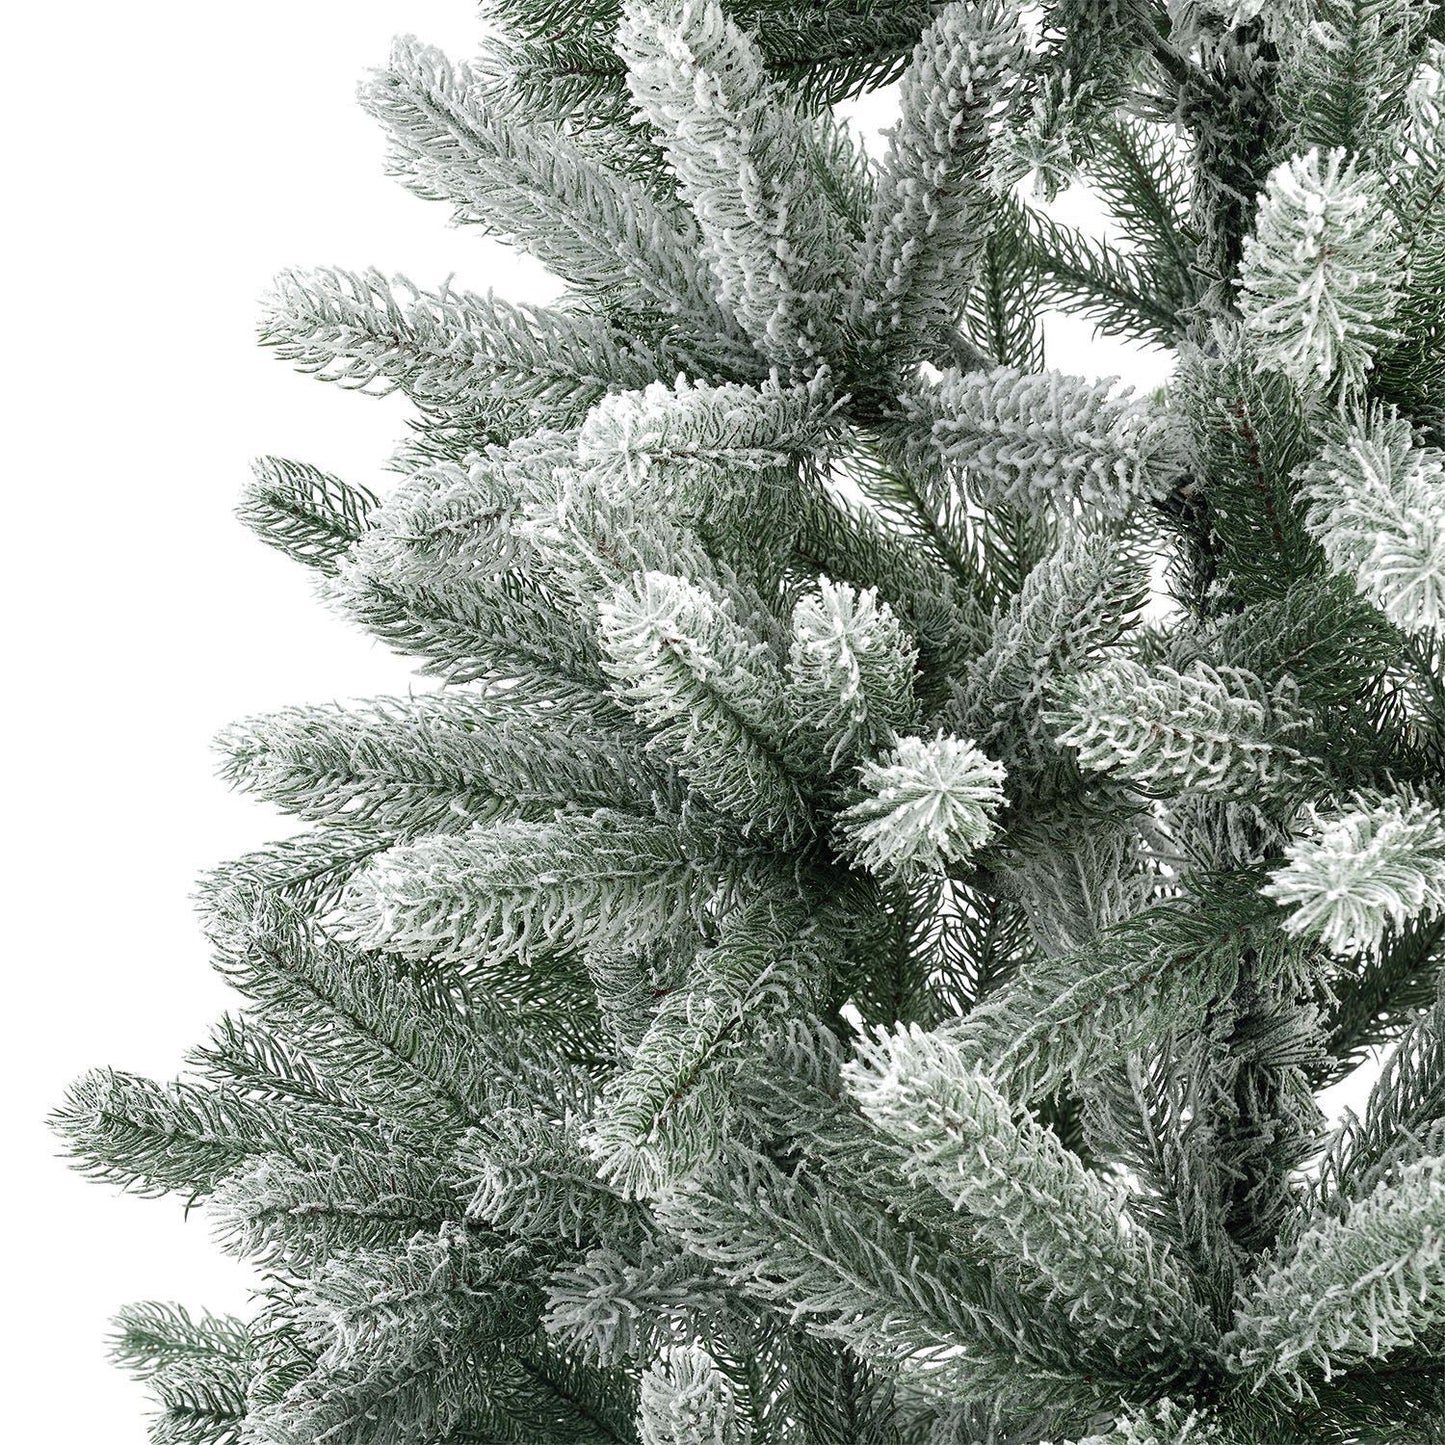 Künstlicher Weihnachtsbaum Talvi 180cm mit Schnee